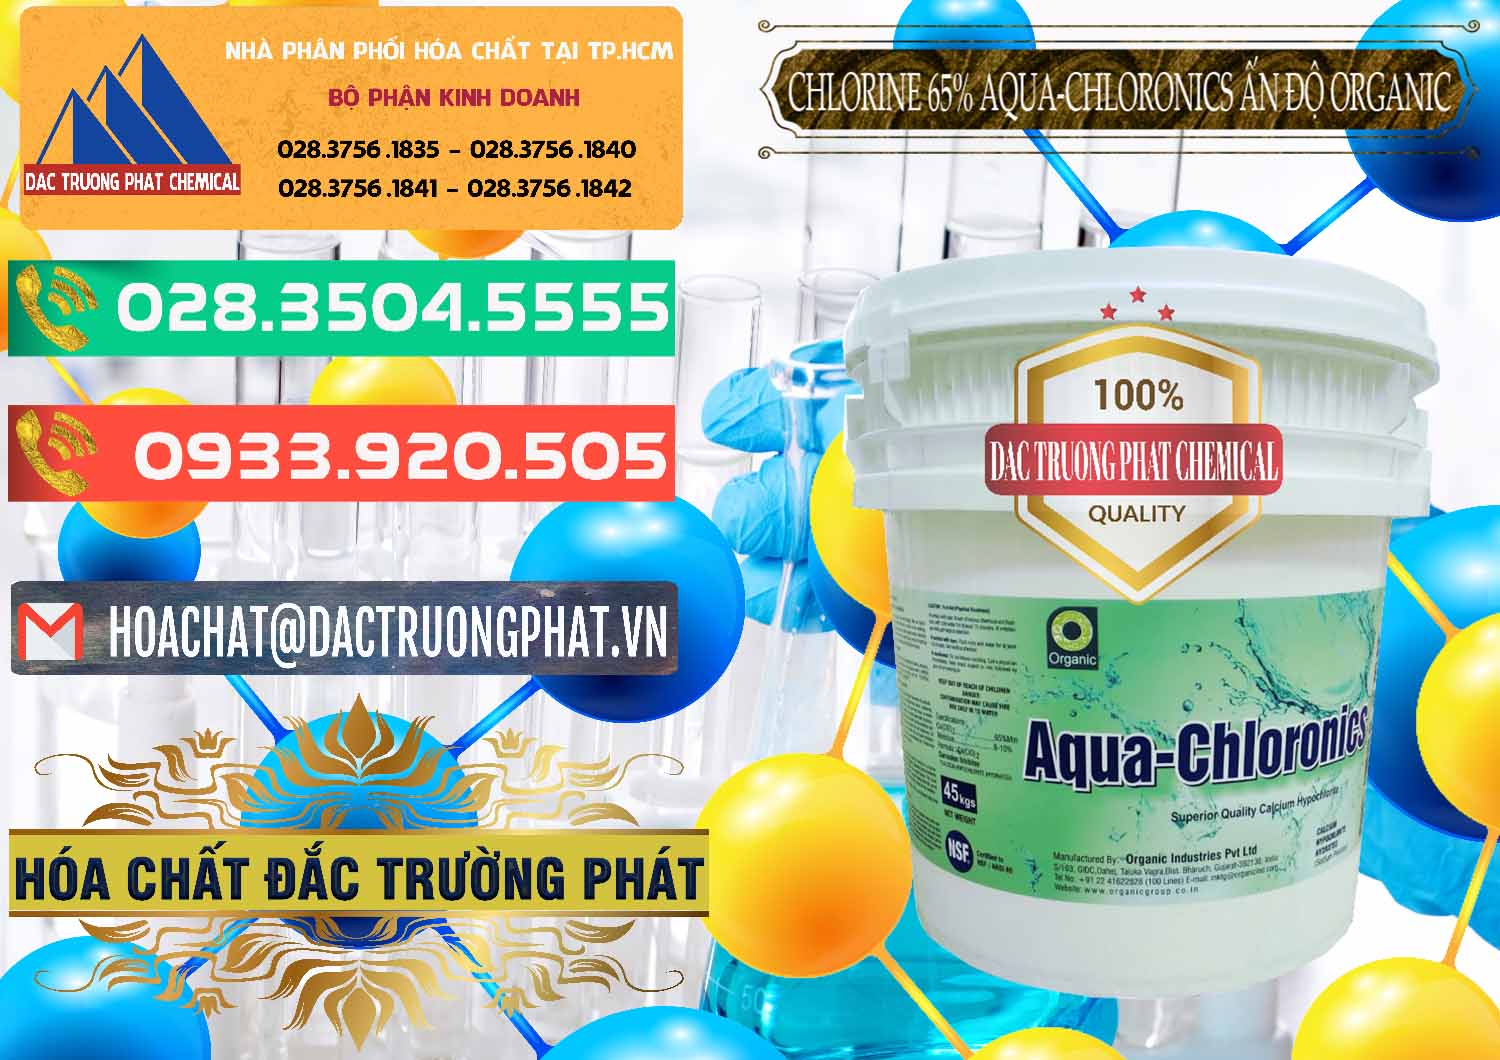 Cty nhập khẩu ( bán ) Chlorine – Clorin 65% Aqua-Chloronics Ấn Độ Organic India - 0210 - Công ty chuyên kinh doanh ( phân phối ) hóa chất tại TP.HCM - congtyhoachat.com.vn